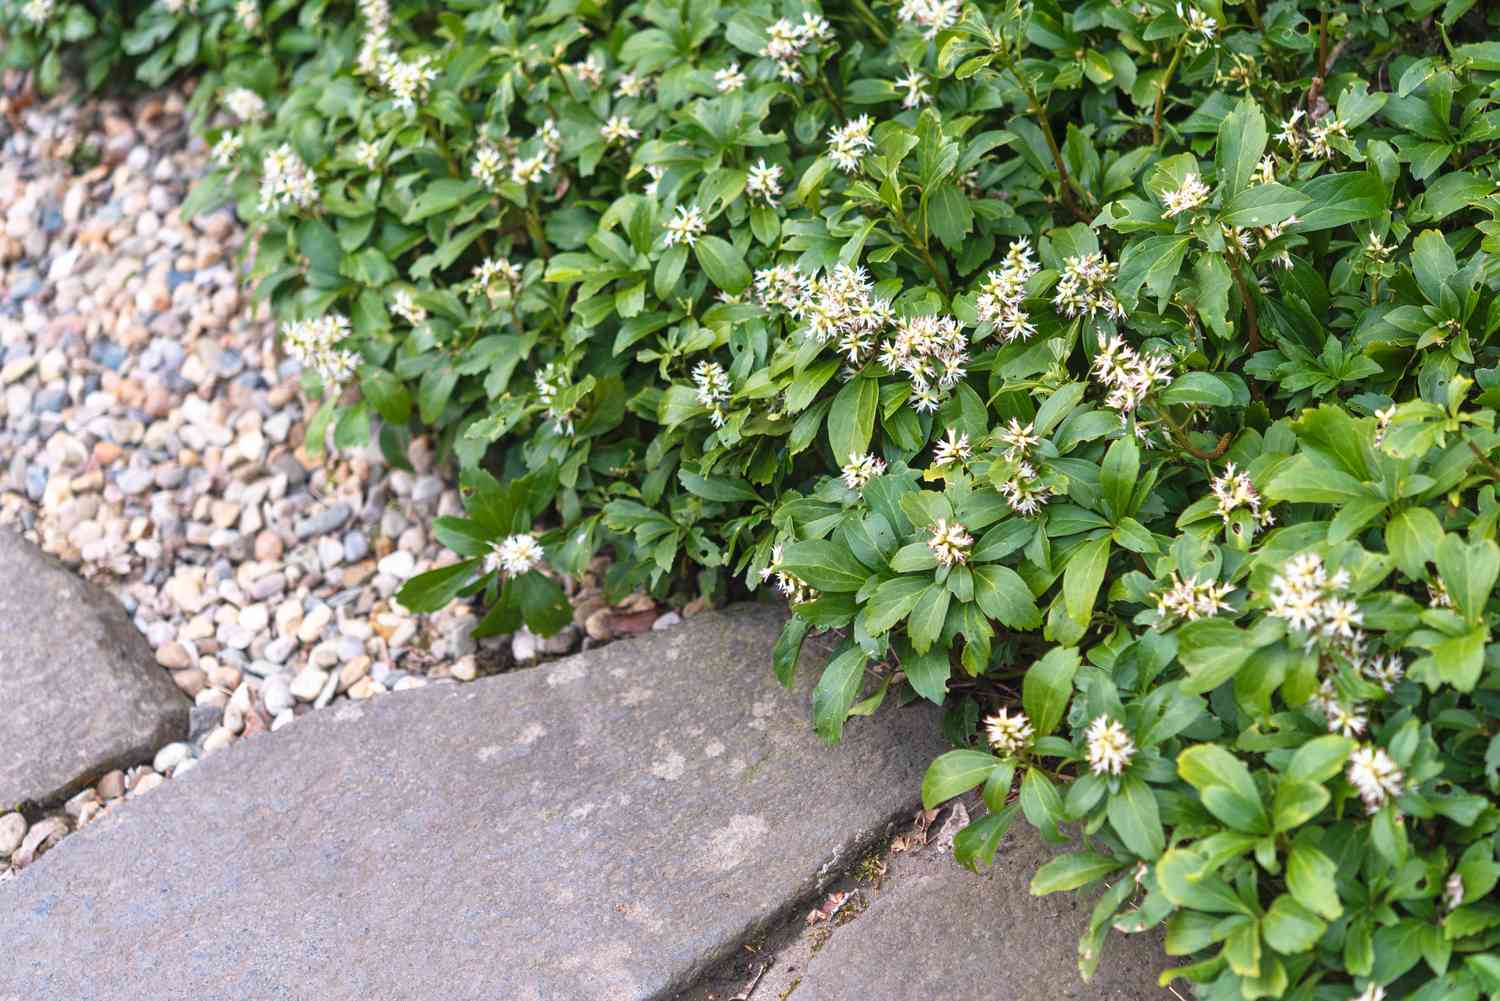 Pachysandra-Pflanze mit kleinen weißen Blütenbüscheln und Blättern, die den Boden in der Nähe der Steinkante bedecken